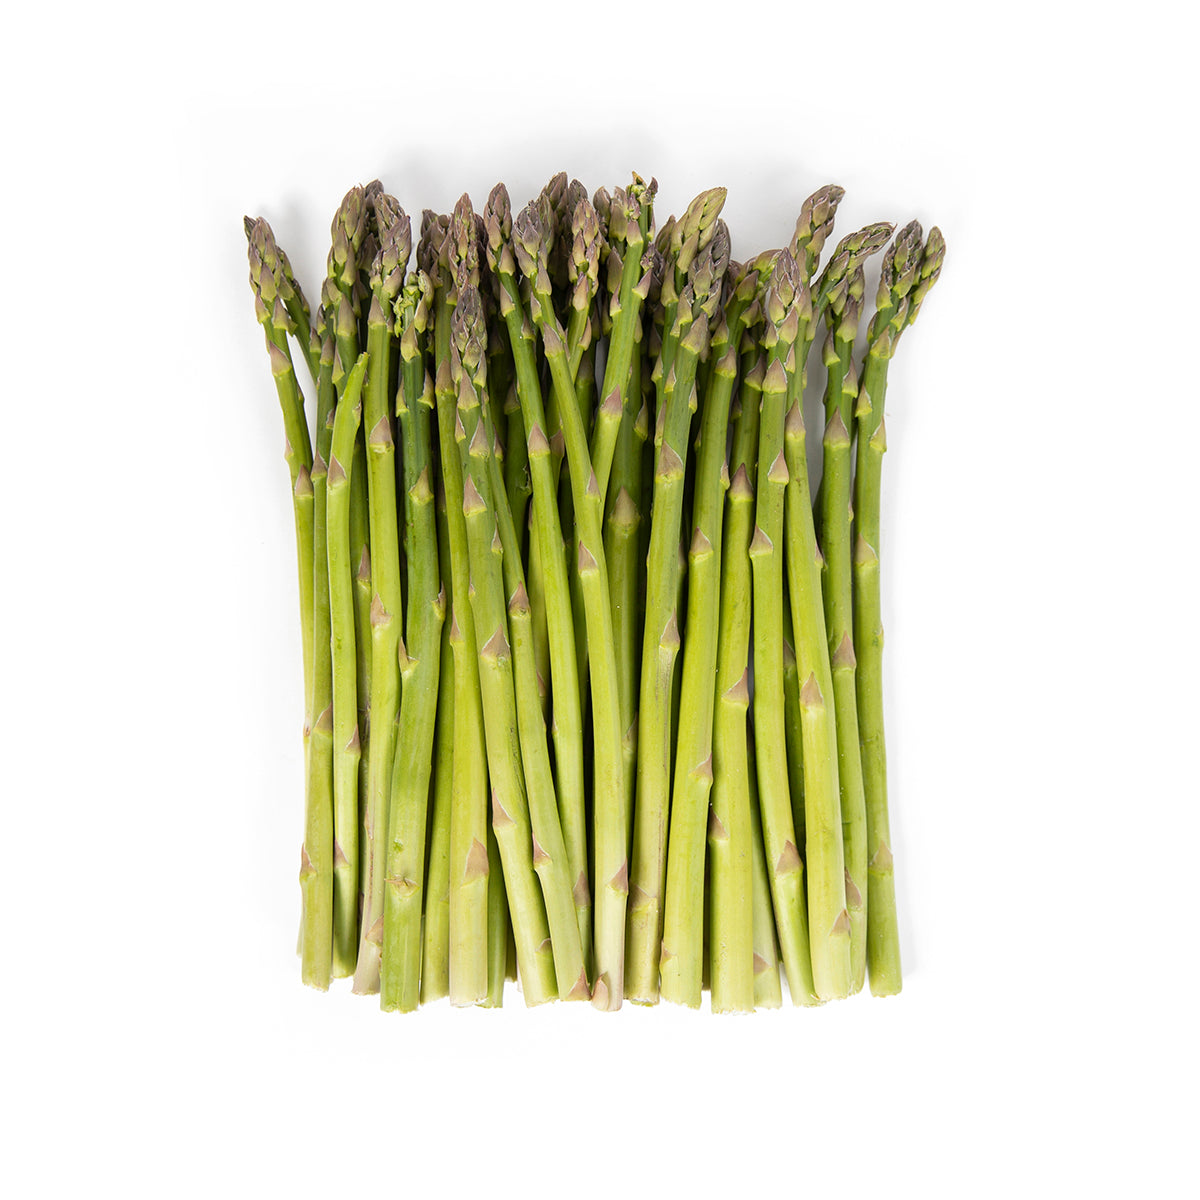 Delta Queen California Premium Standard Asparagus 11 lb